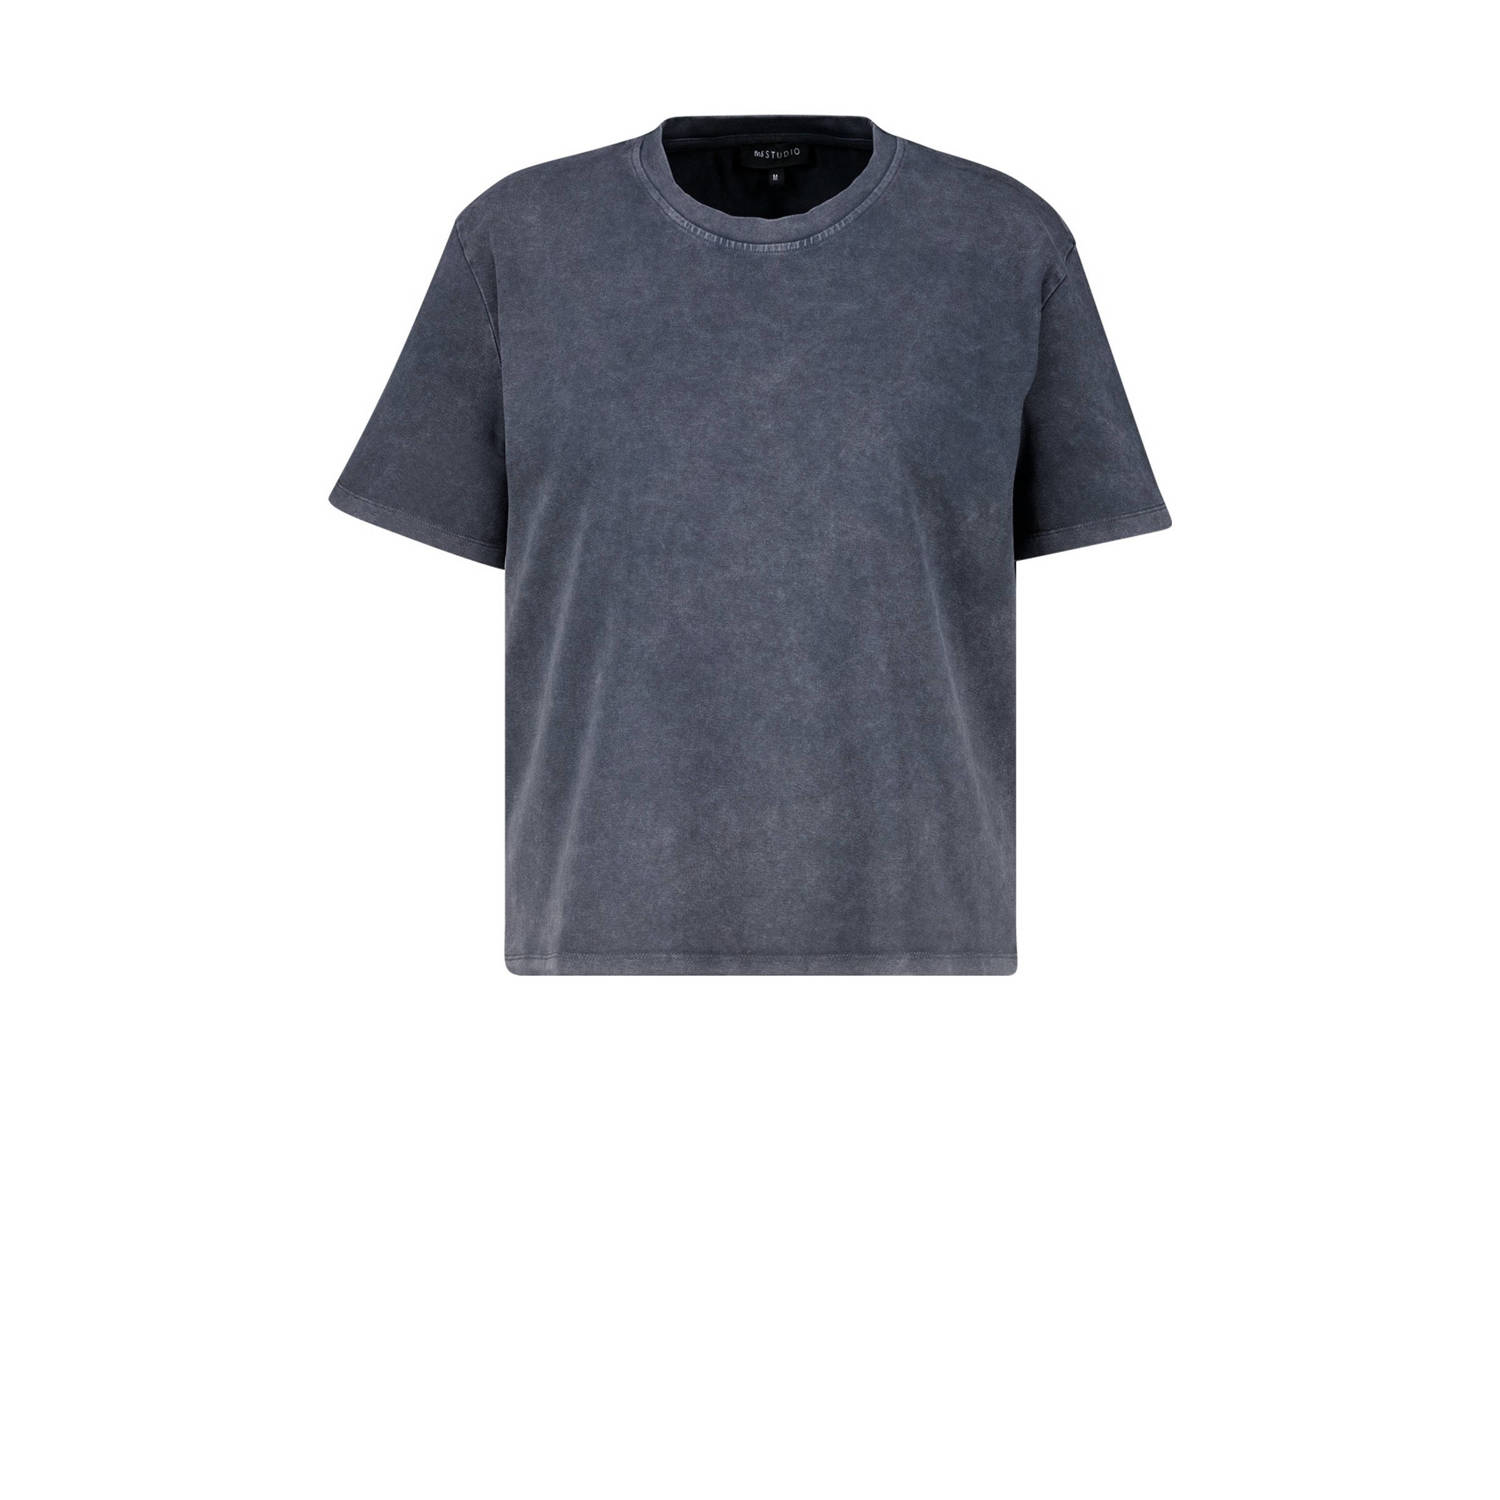 MS Mode T-shirt grijs